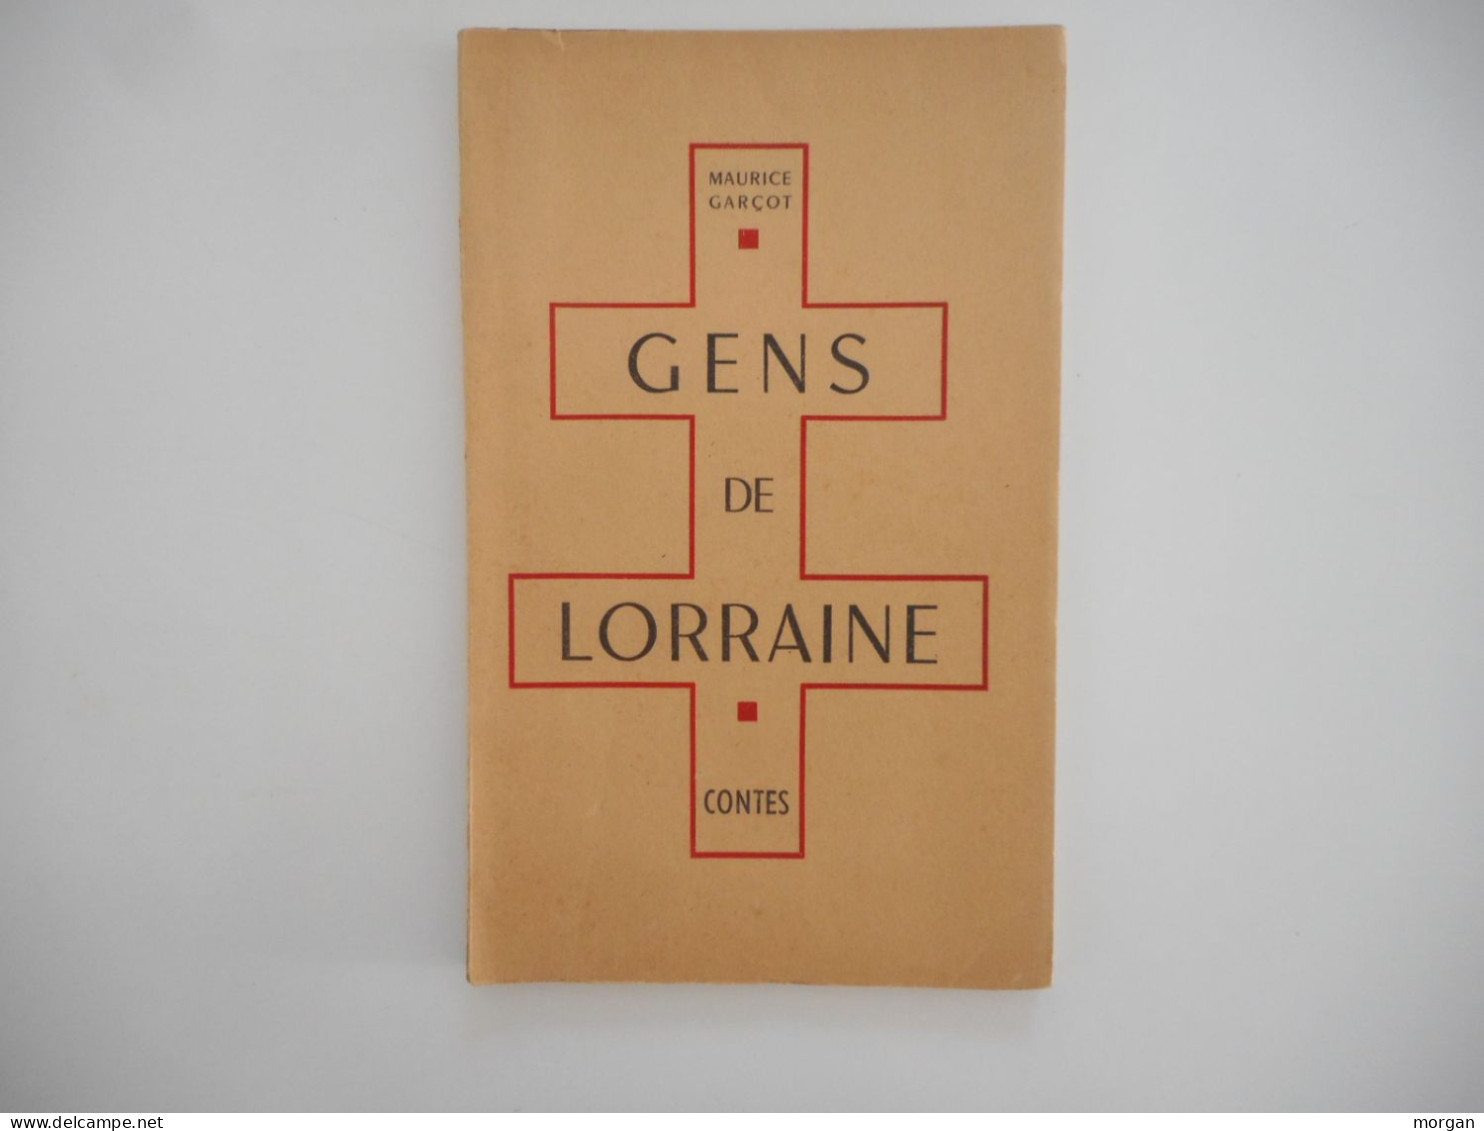 LORRAINE - GENS DE LORRAINE, MAURICE GARCOT  1947  CONTES LORRAINS - Lorraine - Vosges